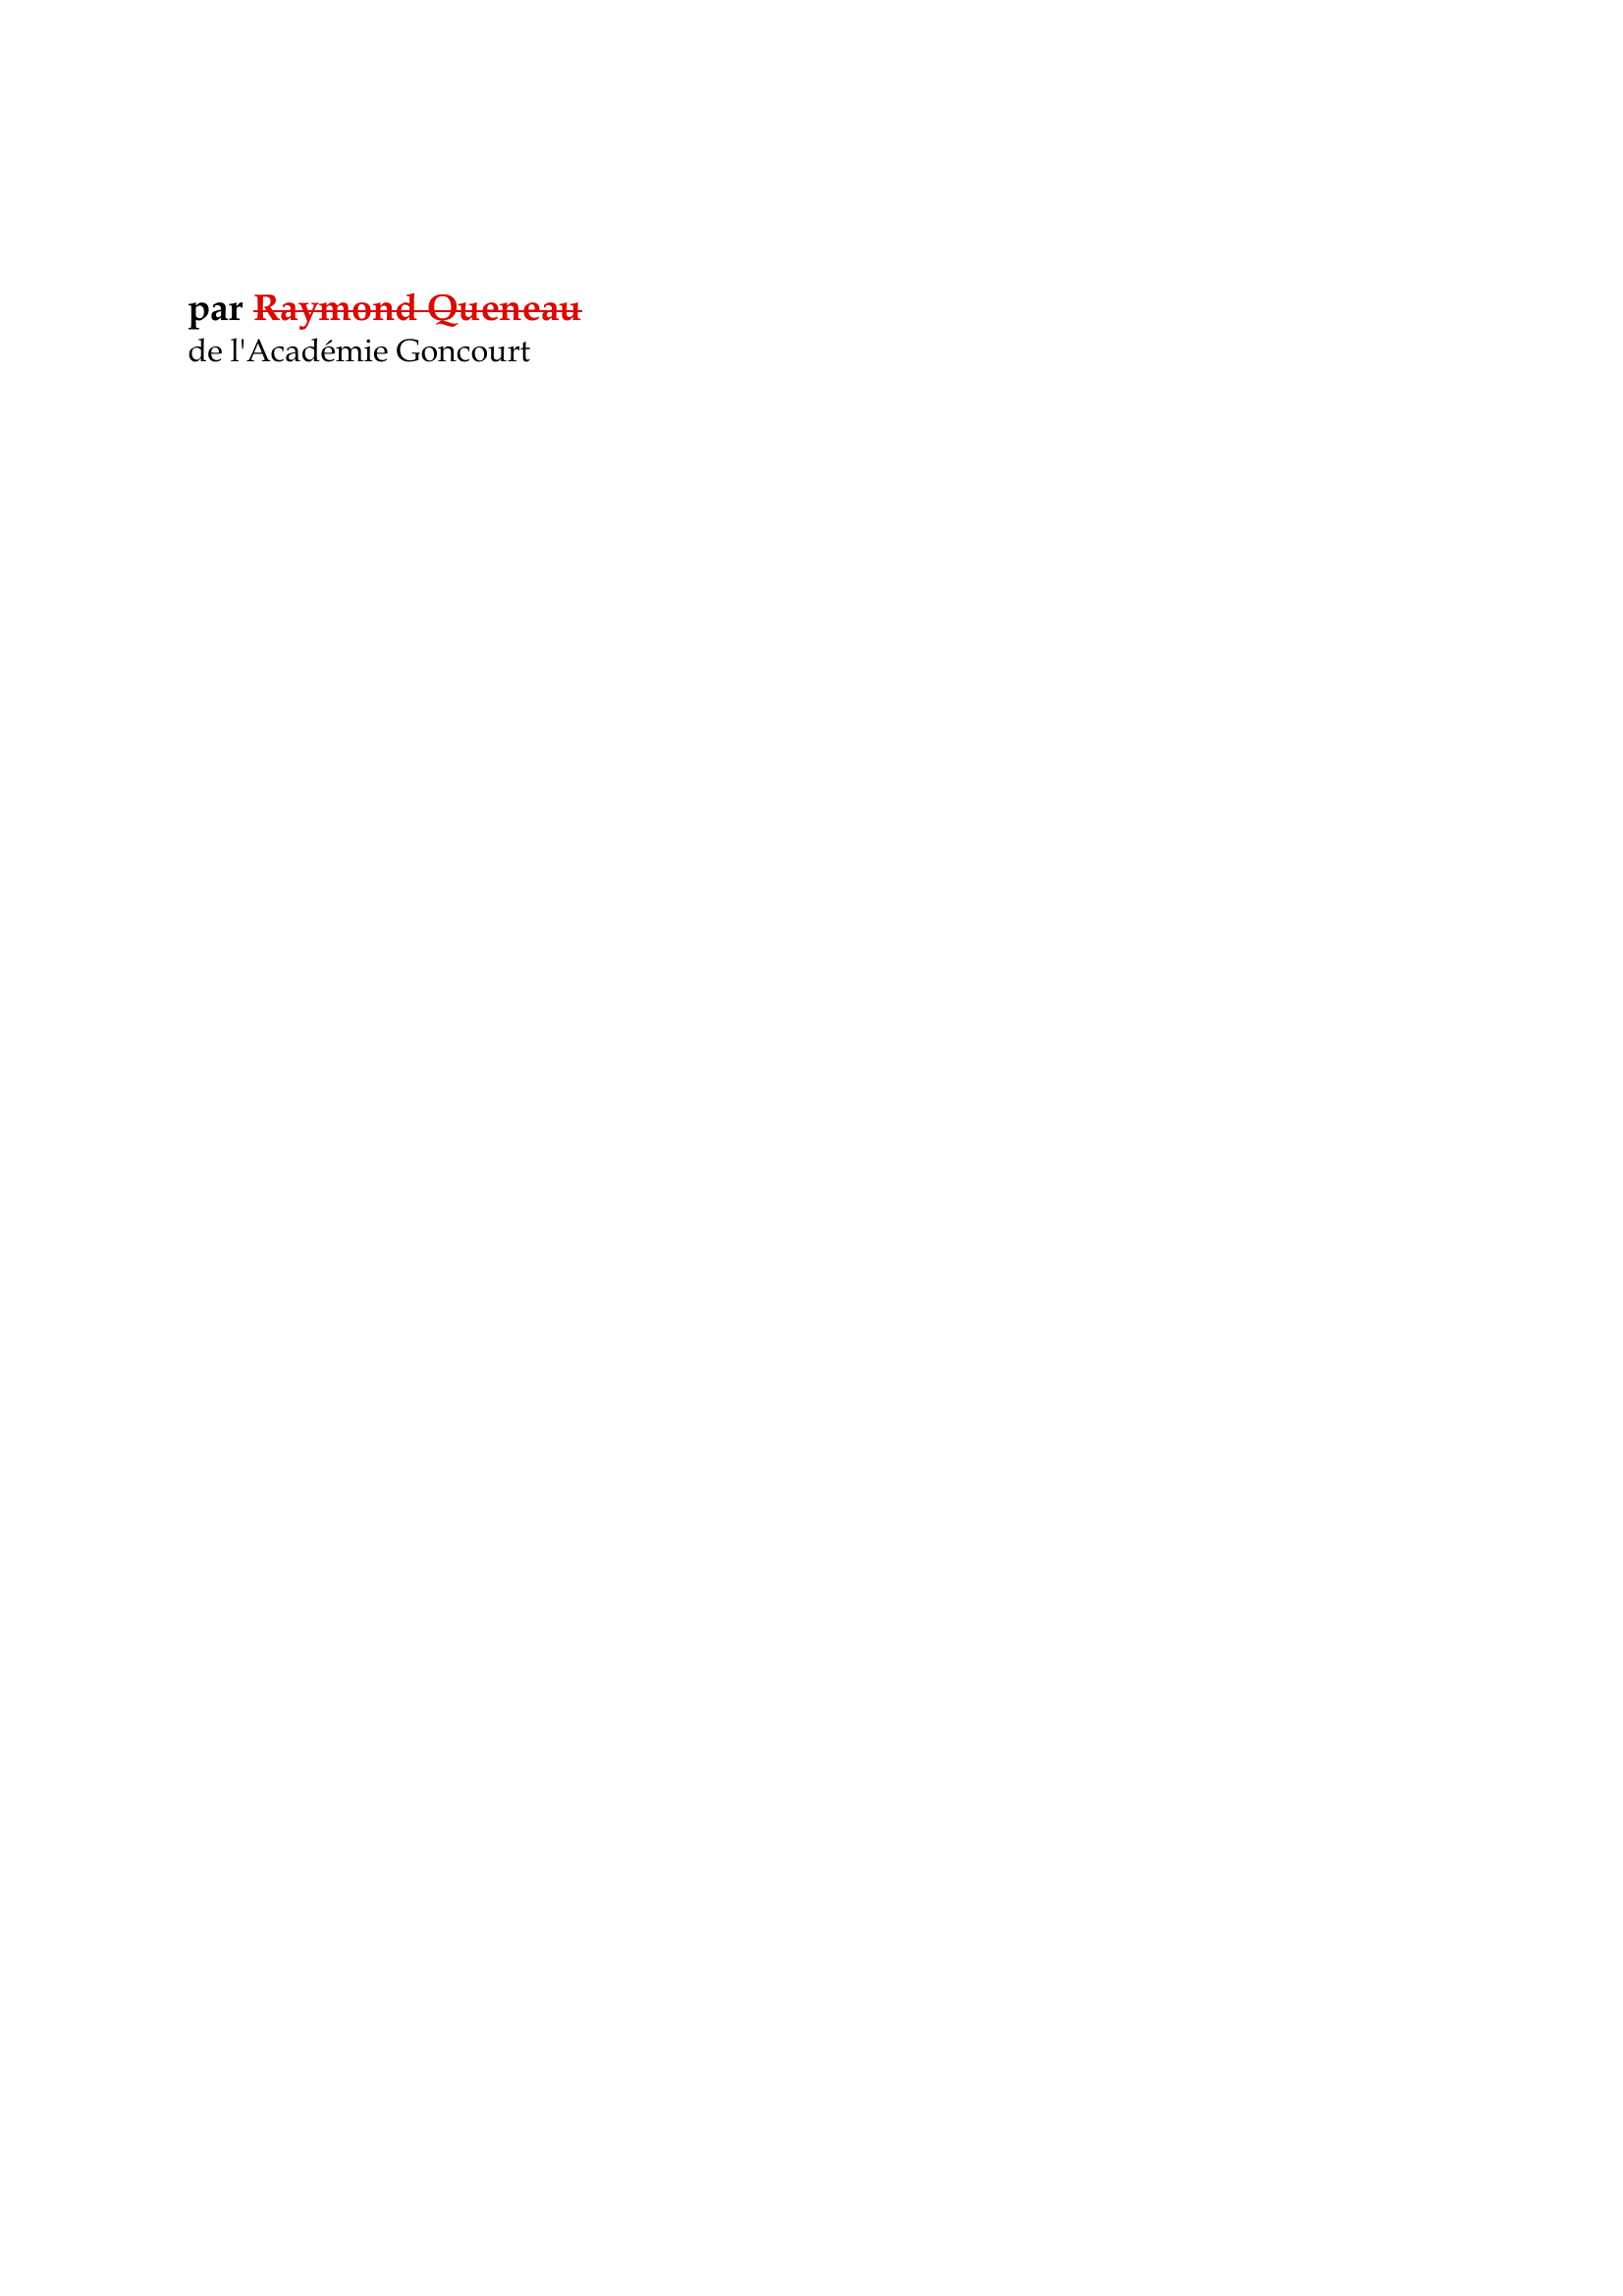 Prévisualisation du document Quelques maîtres du XXe siècle

par Raymond Queneau
de l'Académie Goncourt

Après avoir